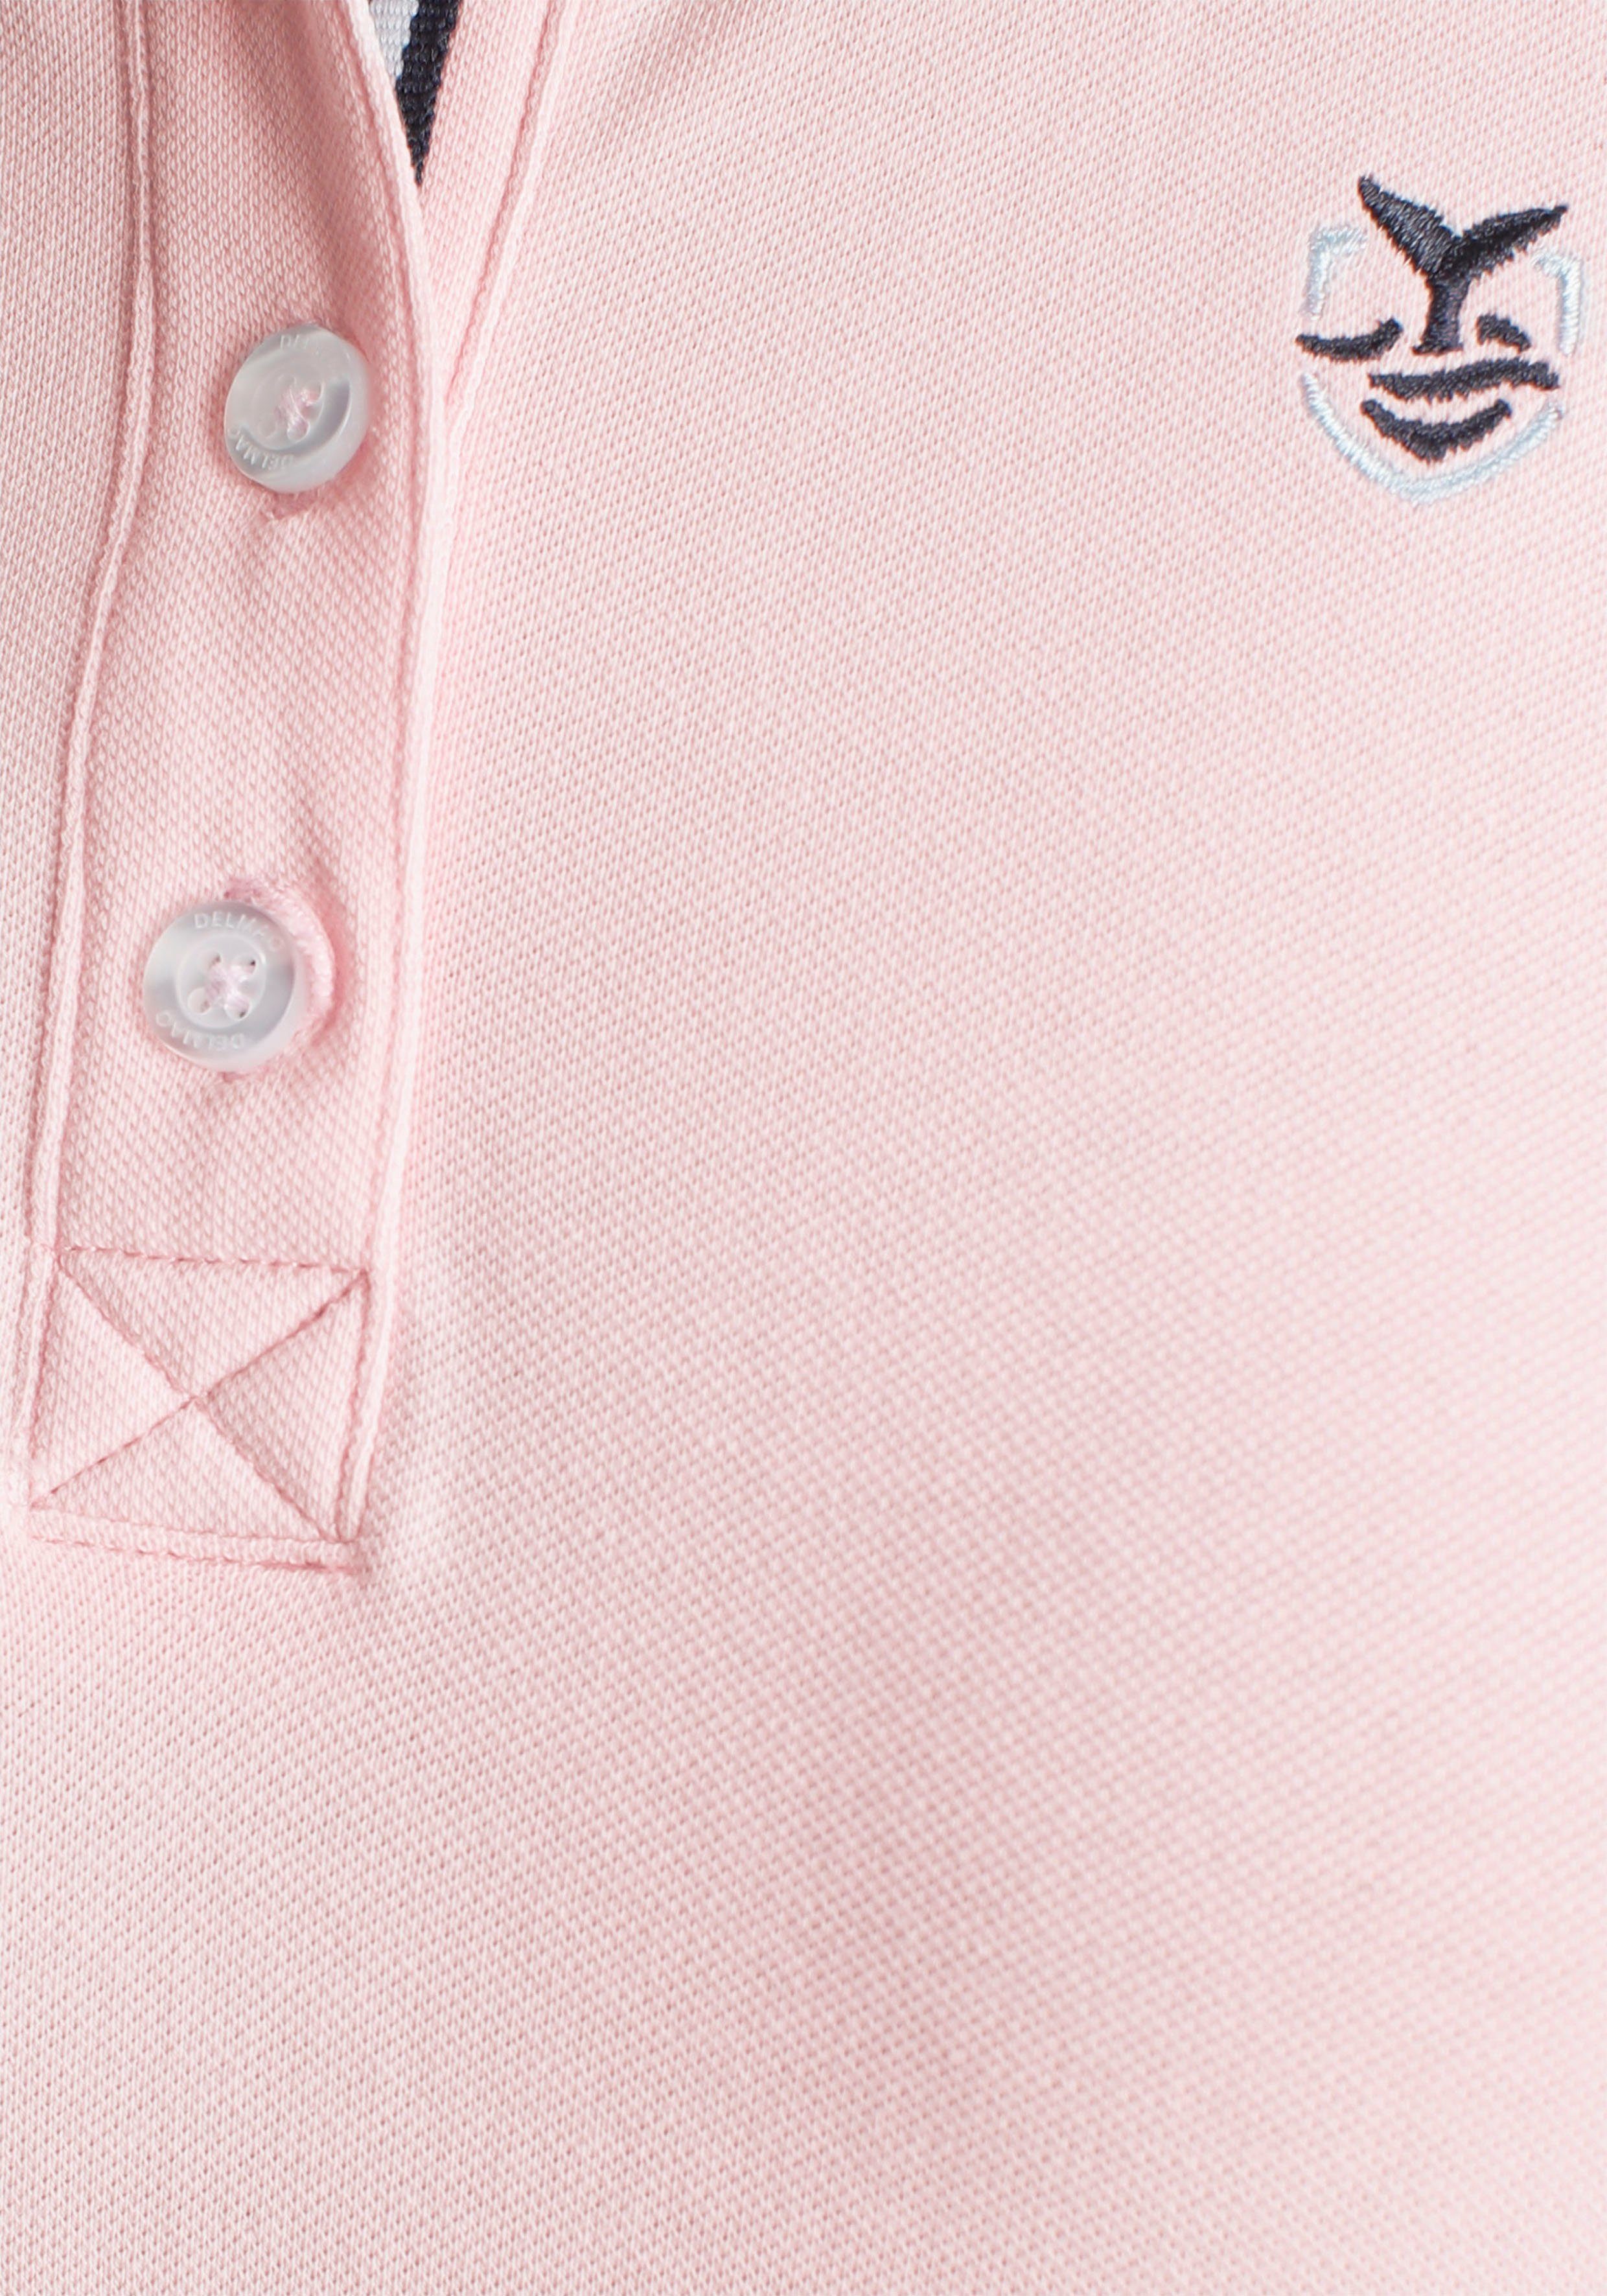 Farben rosa MARKE! in klassischer - Form DELMAO NEUE in Poloshirt verschiedenen